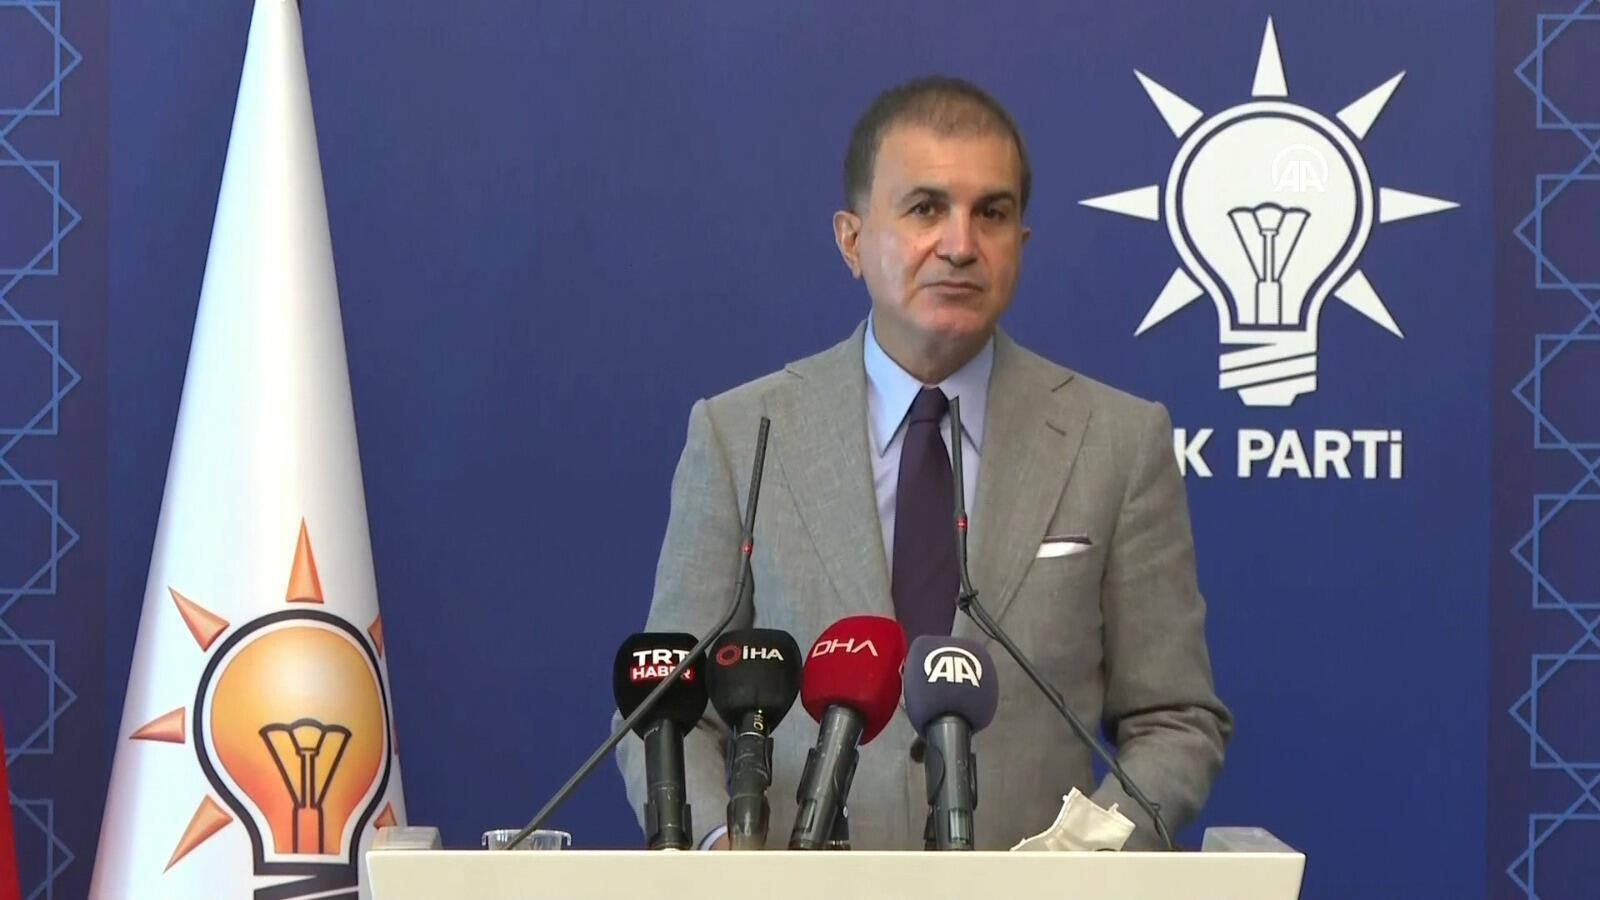 AK Parti Sözcüsü Çelik’ten önemli açıklamalar